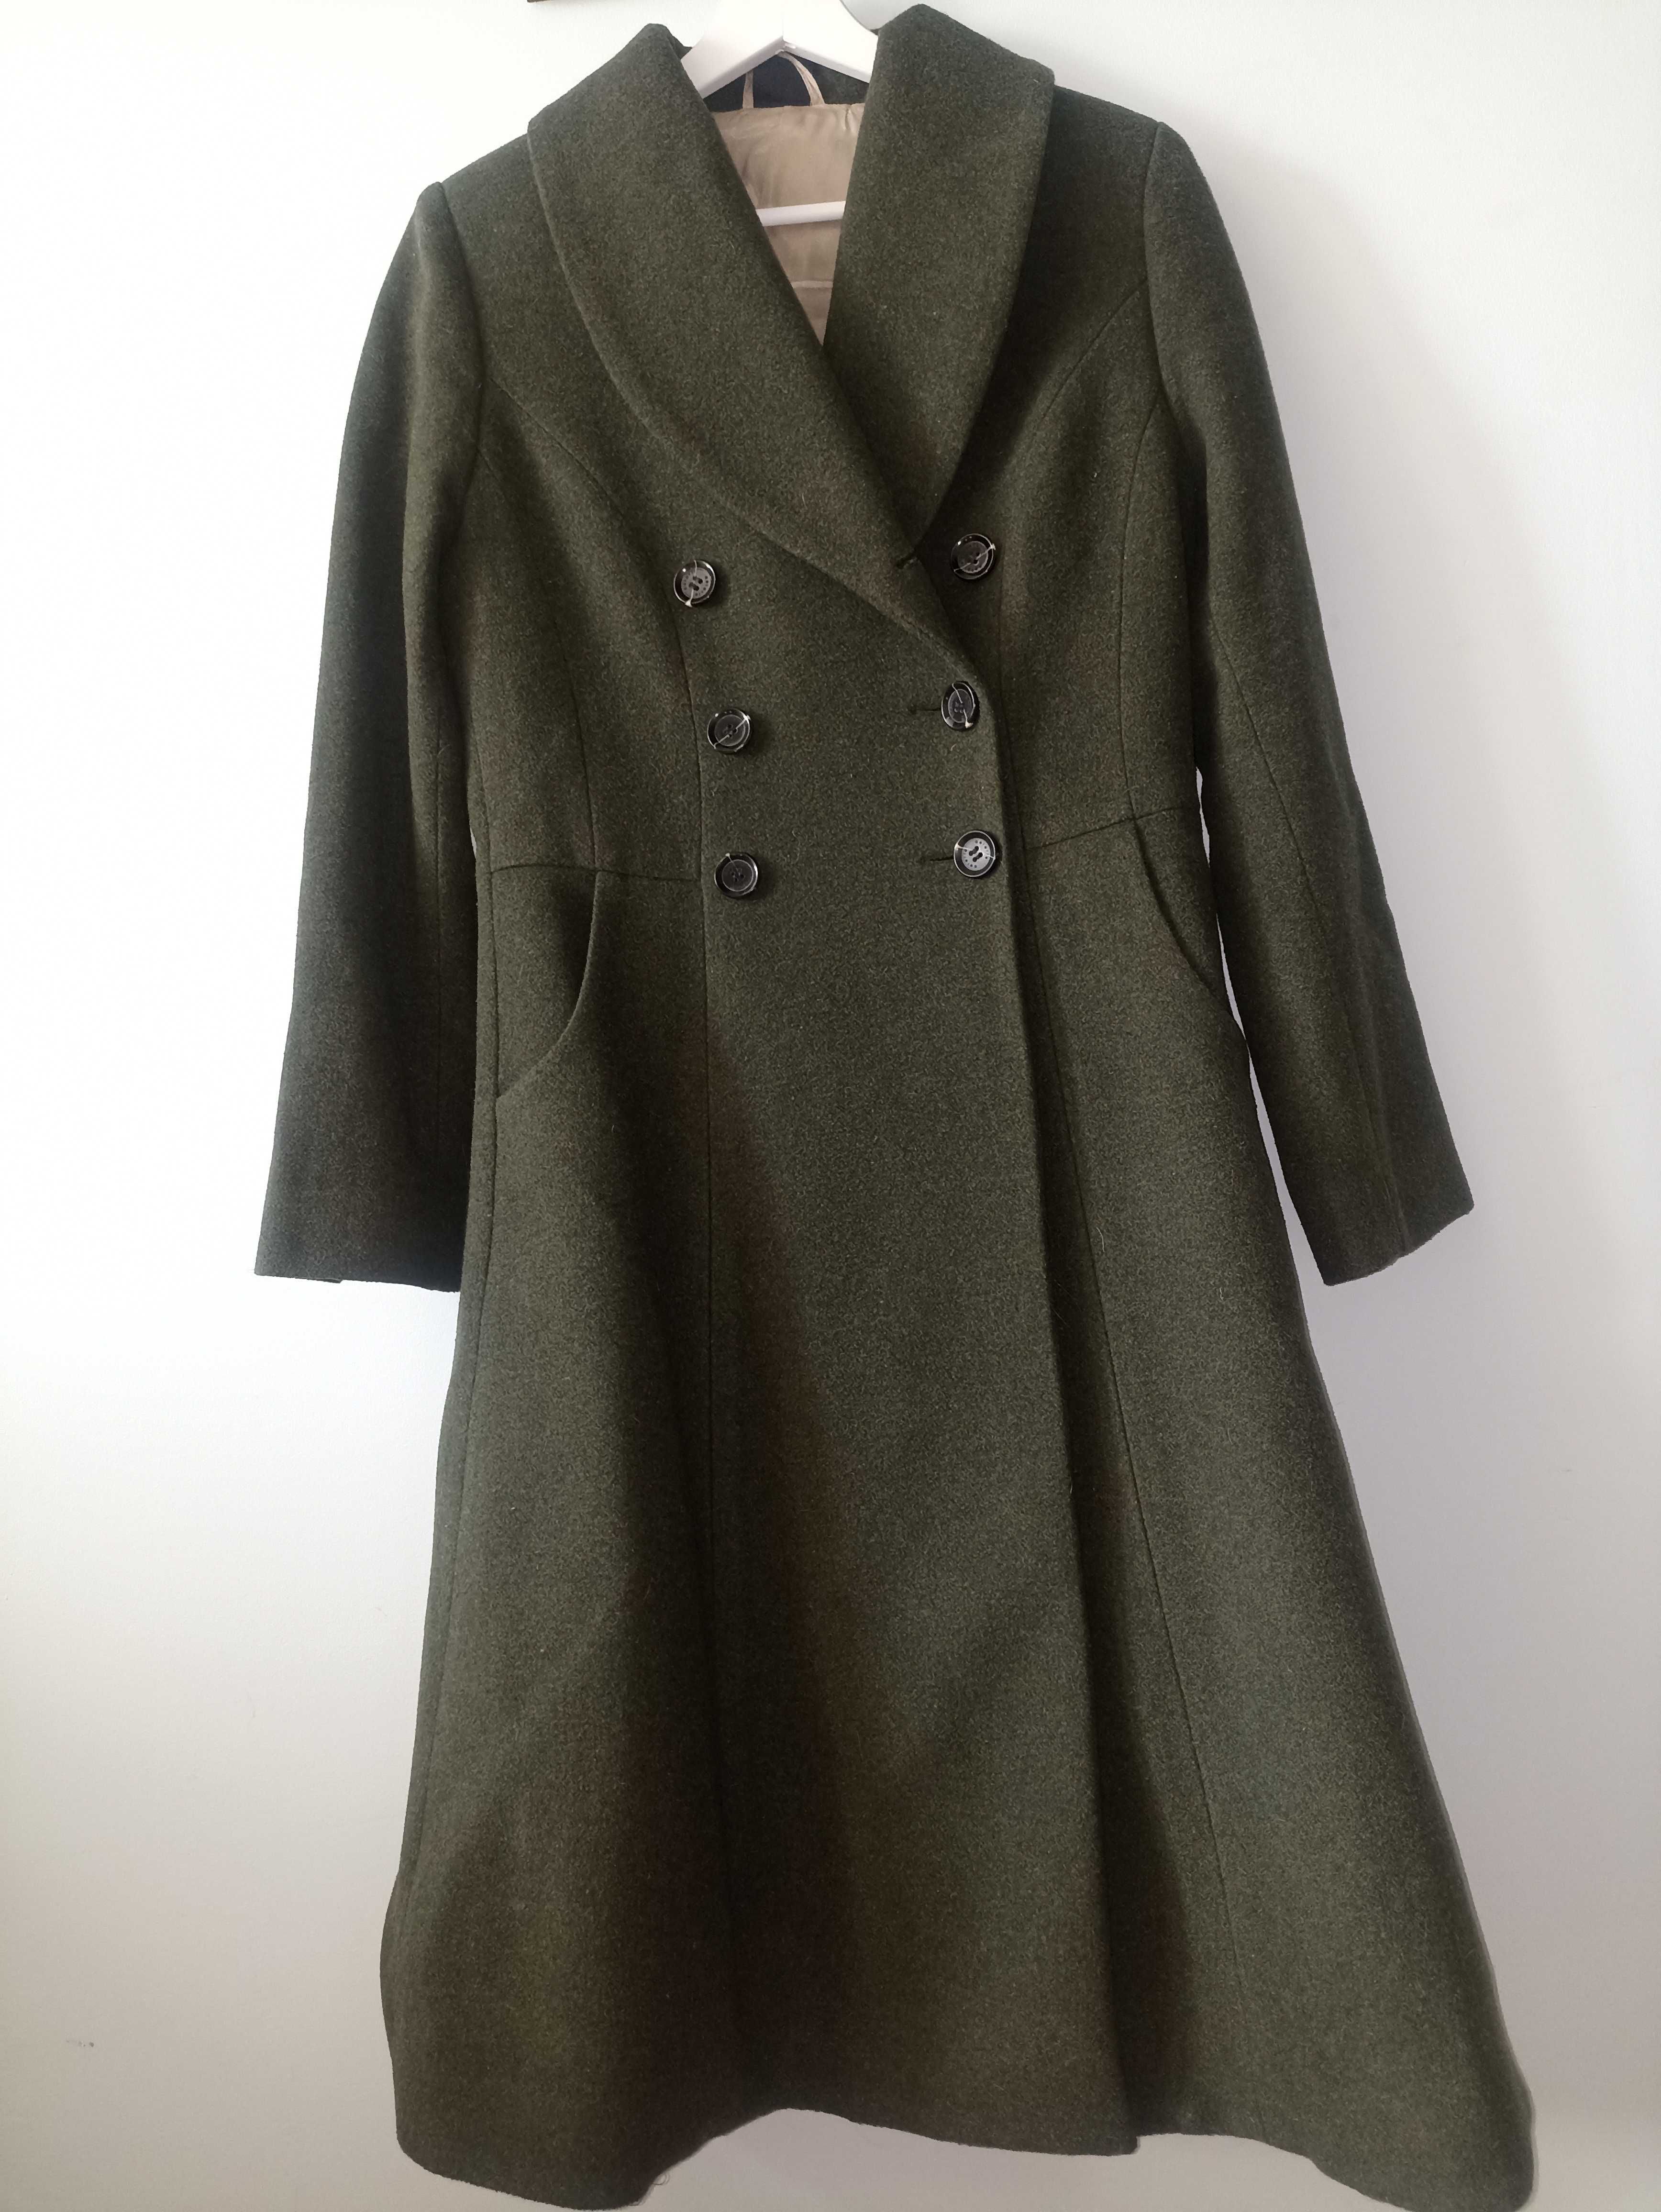 Aeterie - Płaszcz wełniany ciemnozielony vintage - M/38